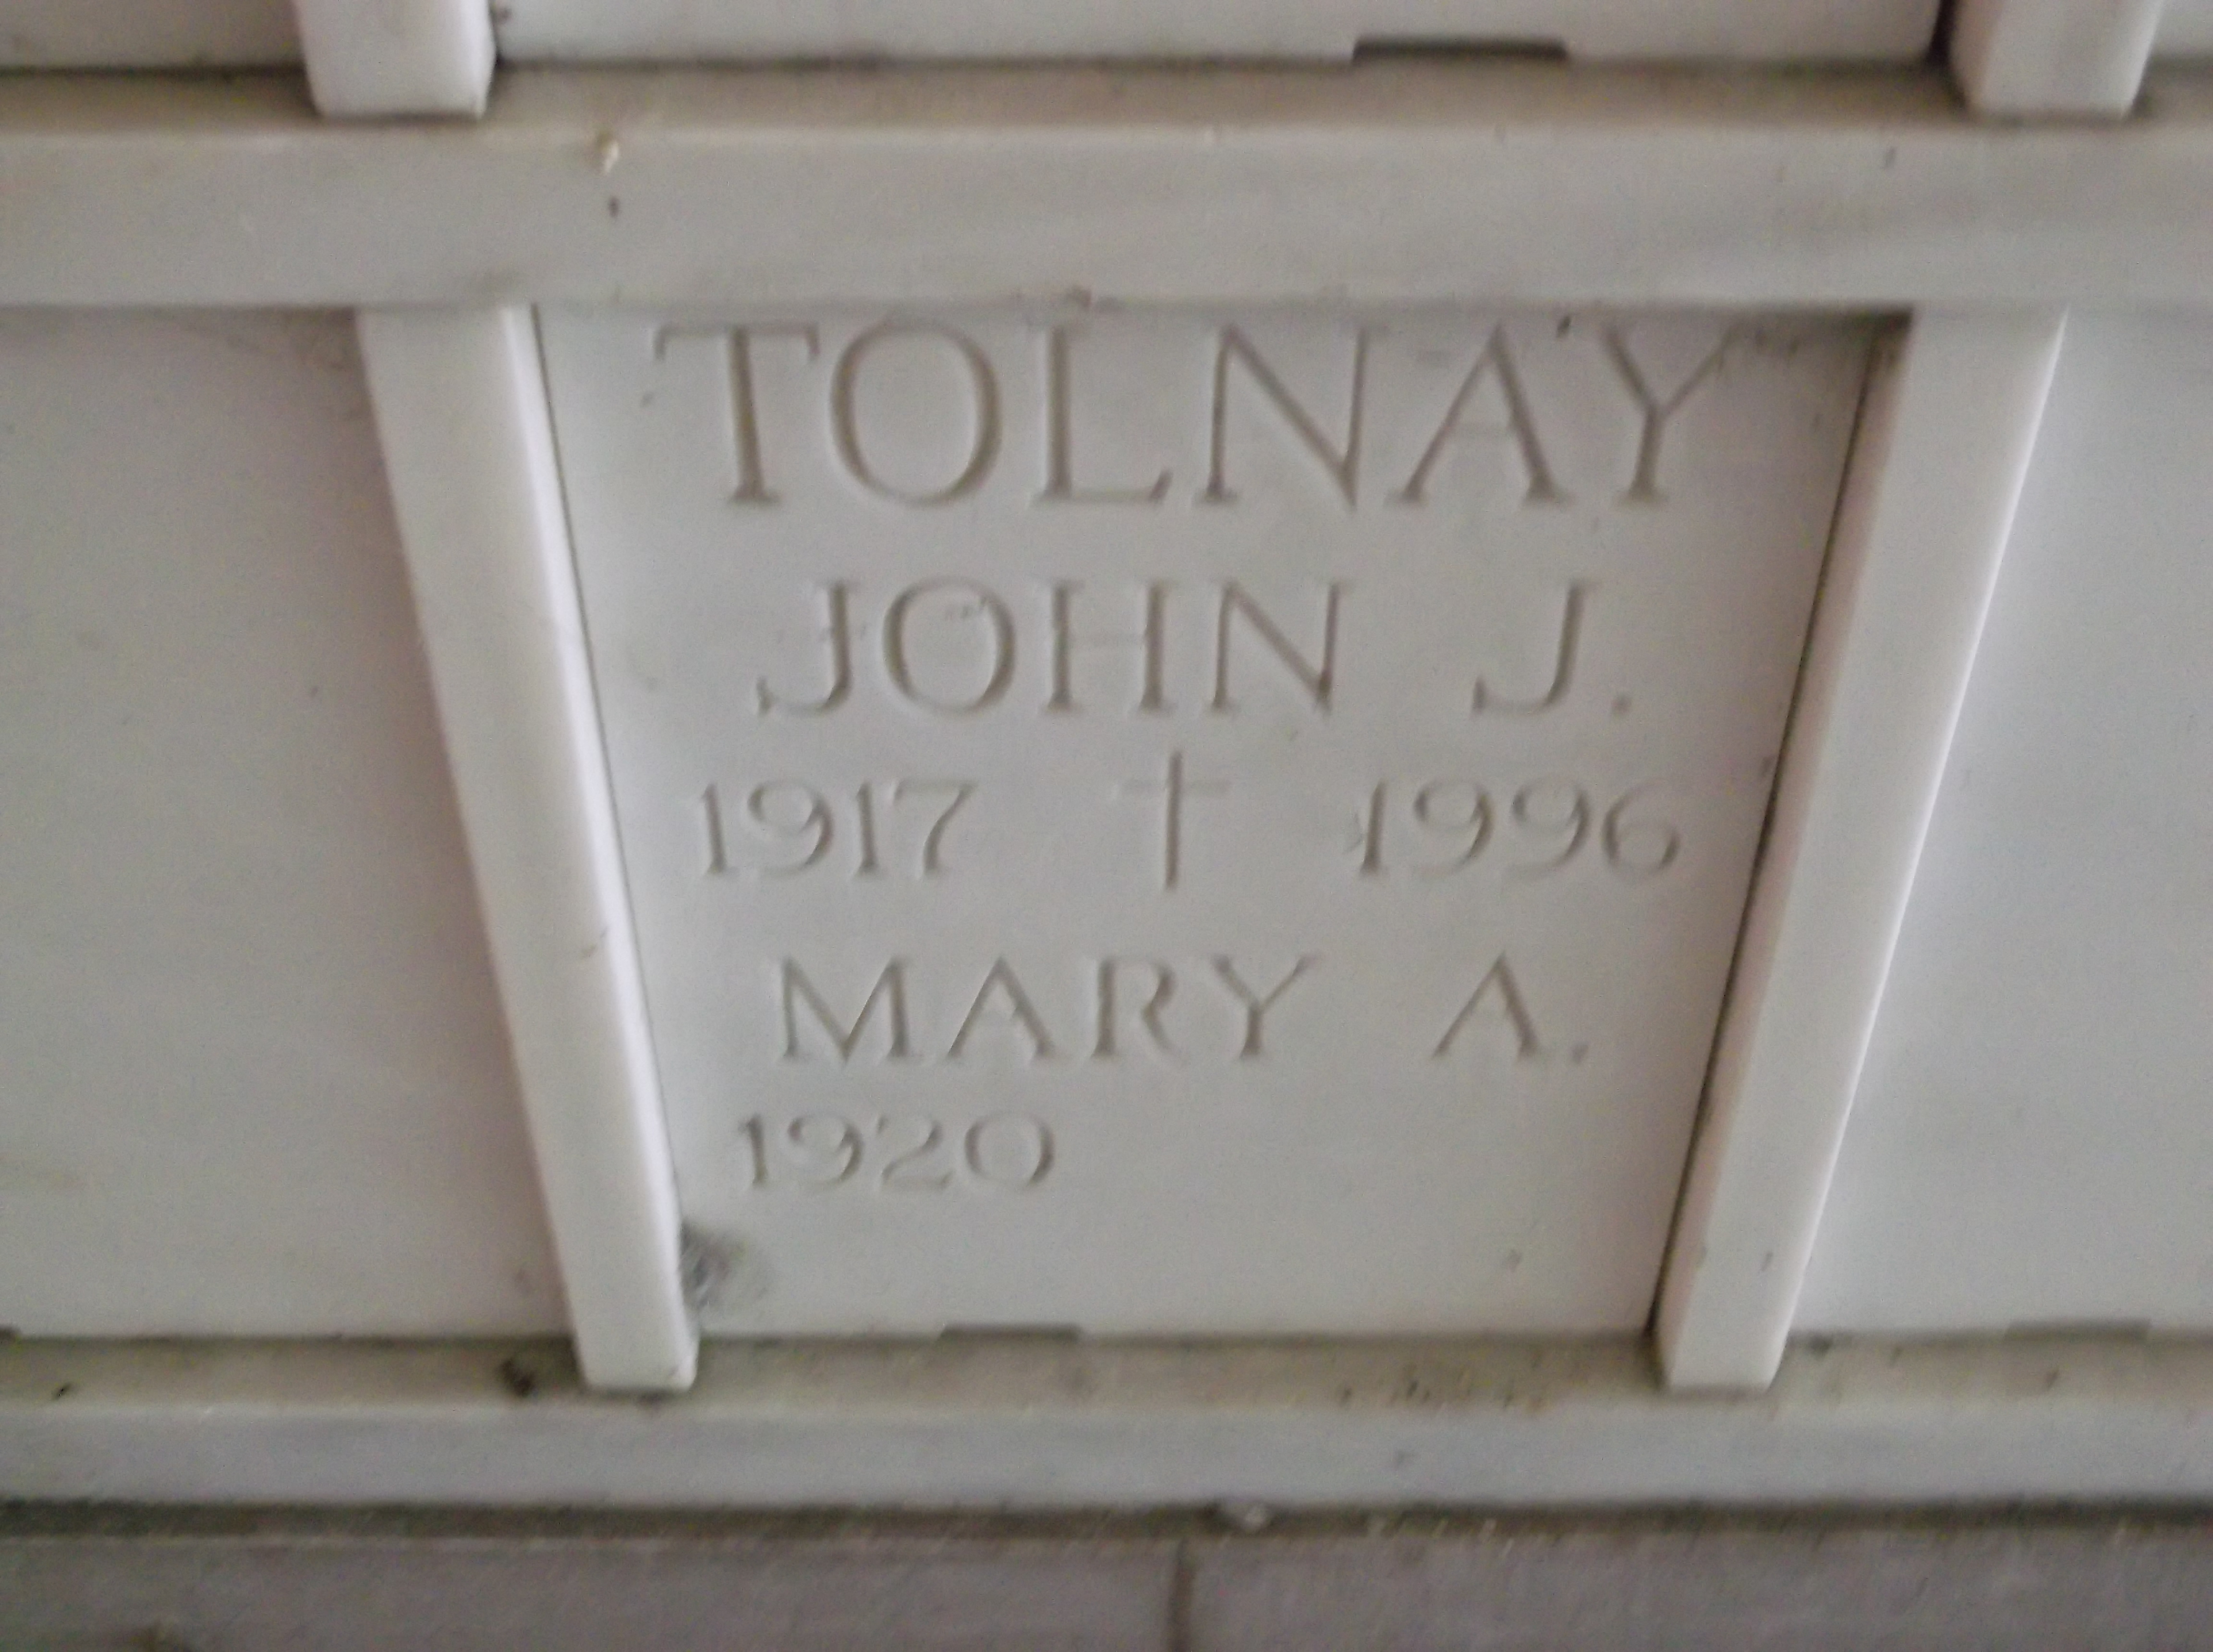 Mary A Tolnay